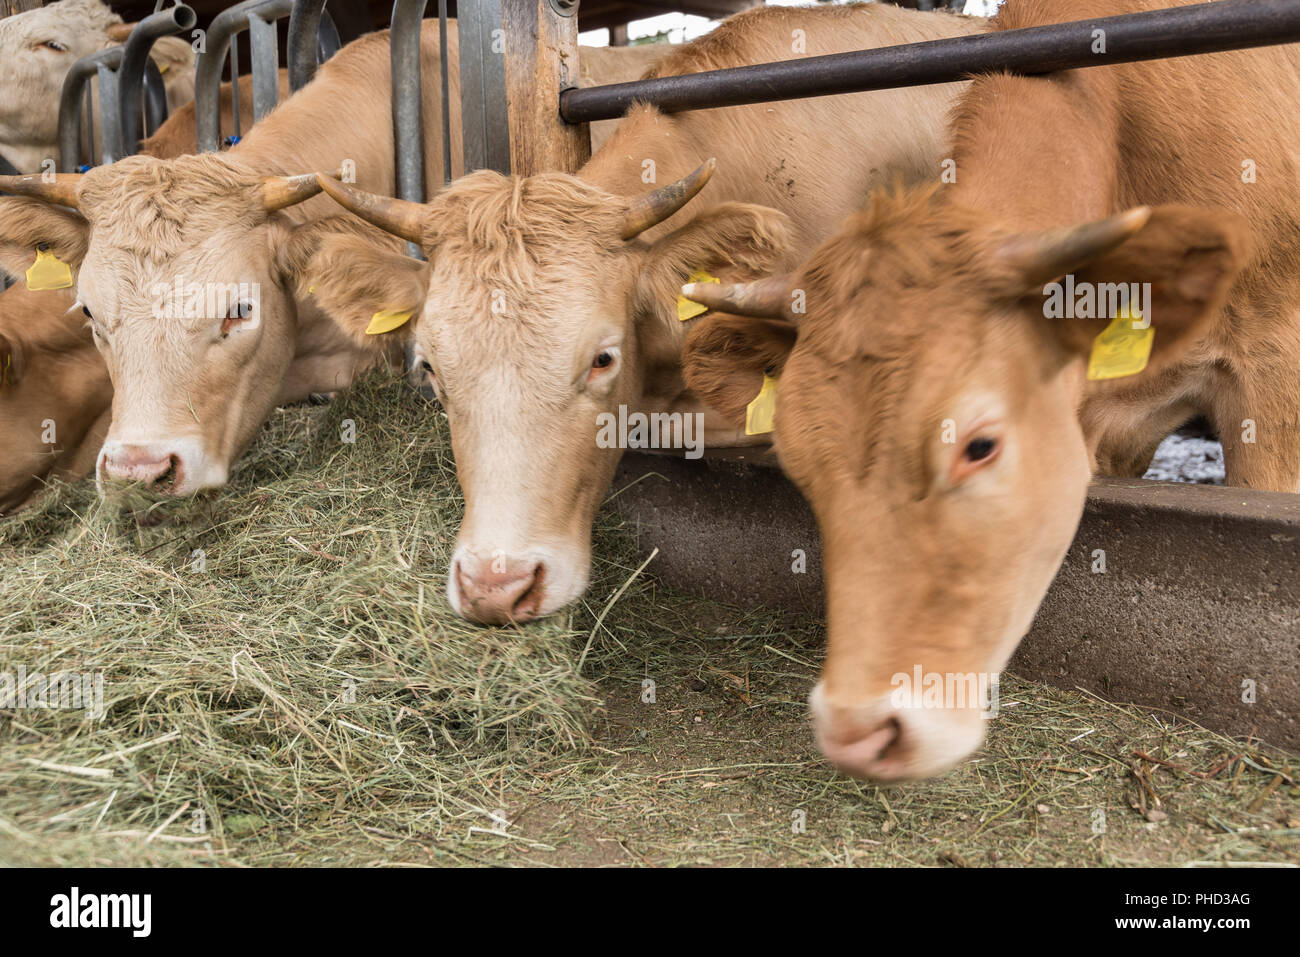 Les vaches mangent du foin dans l'écurie - maintien de bovins Banque D'Images